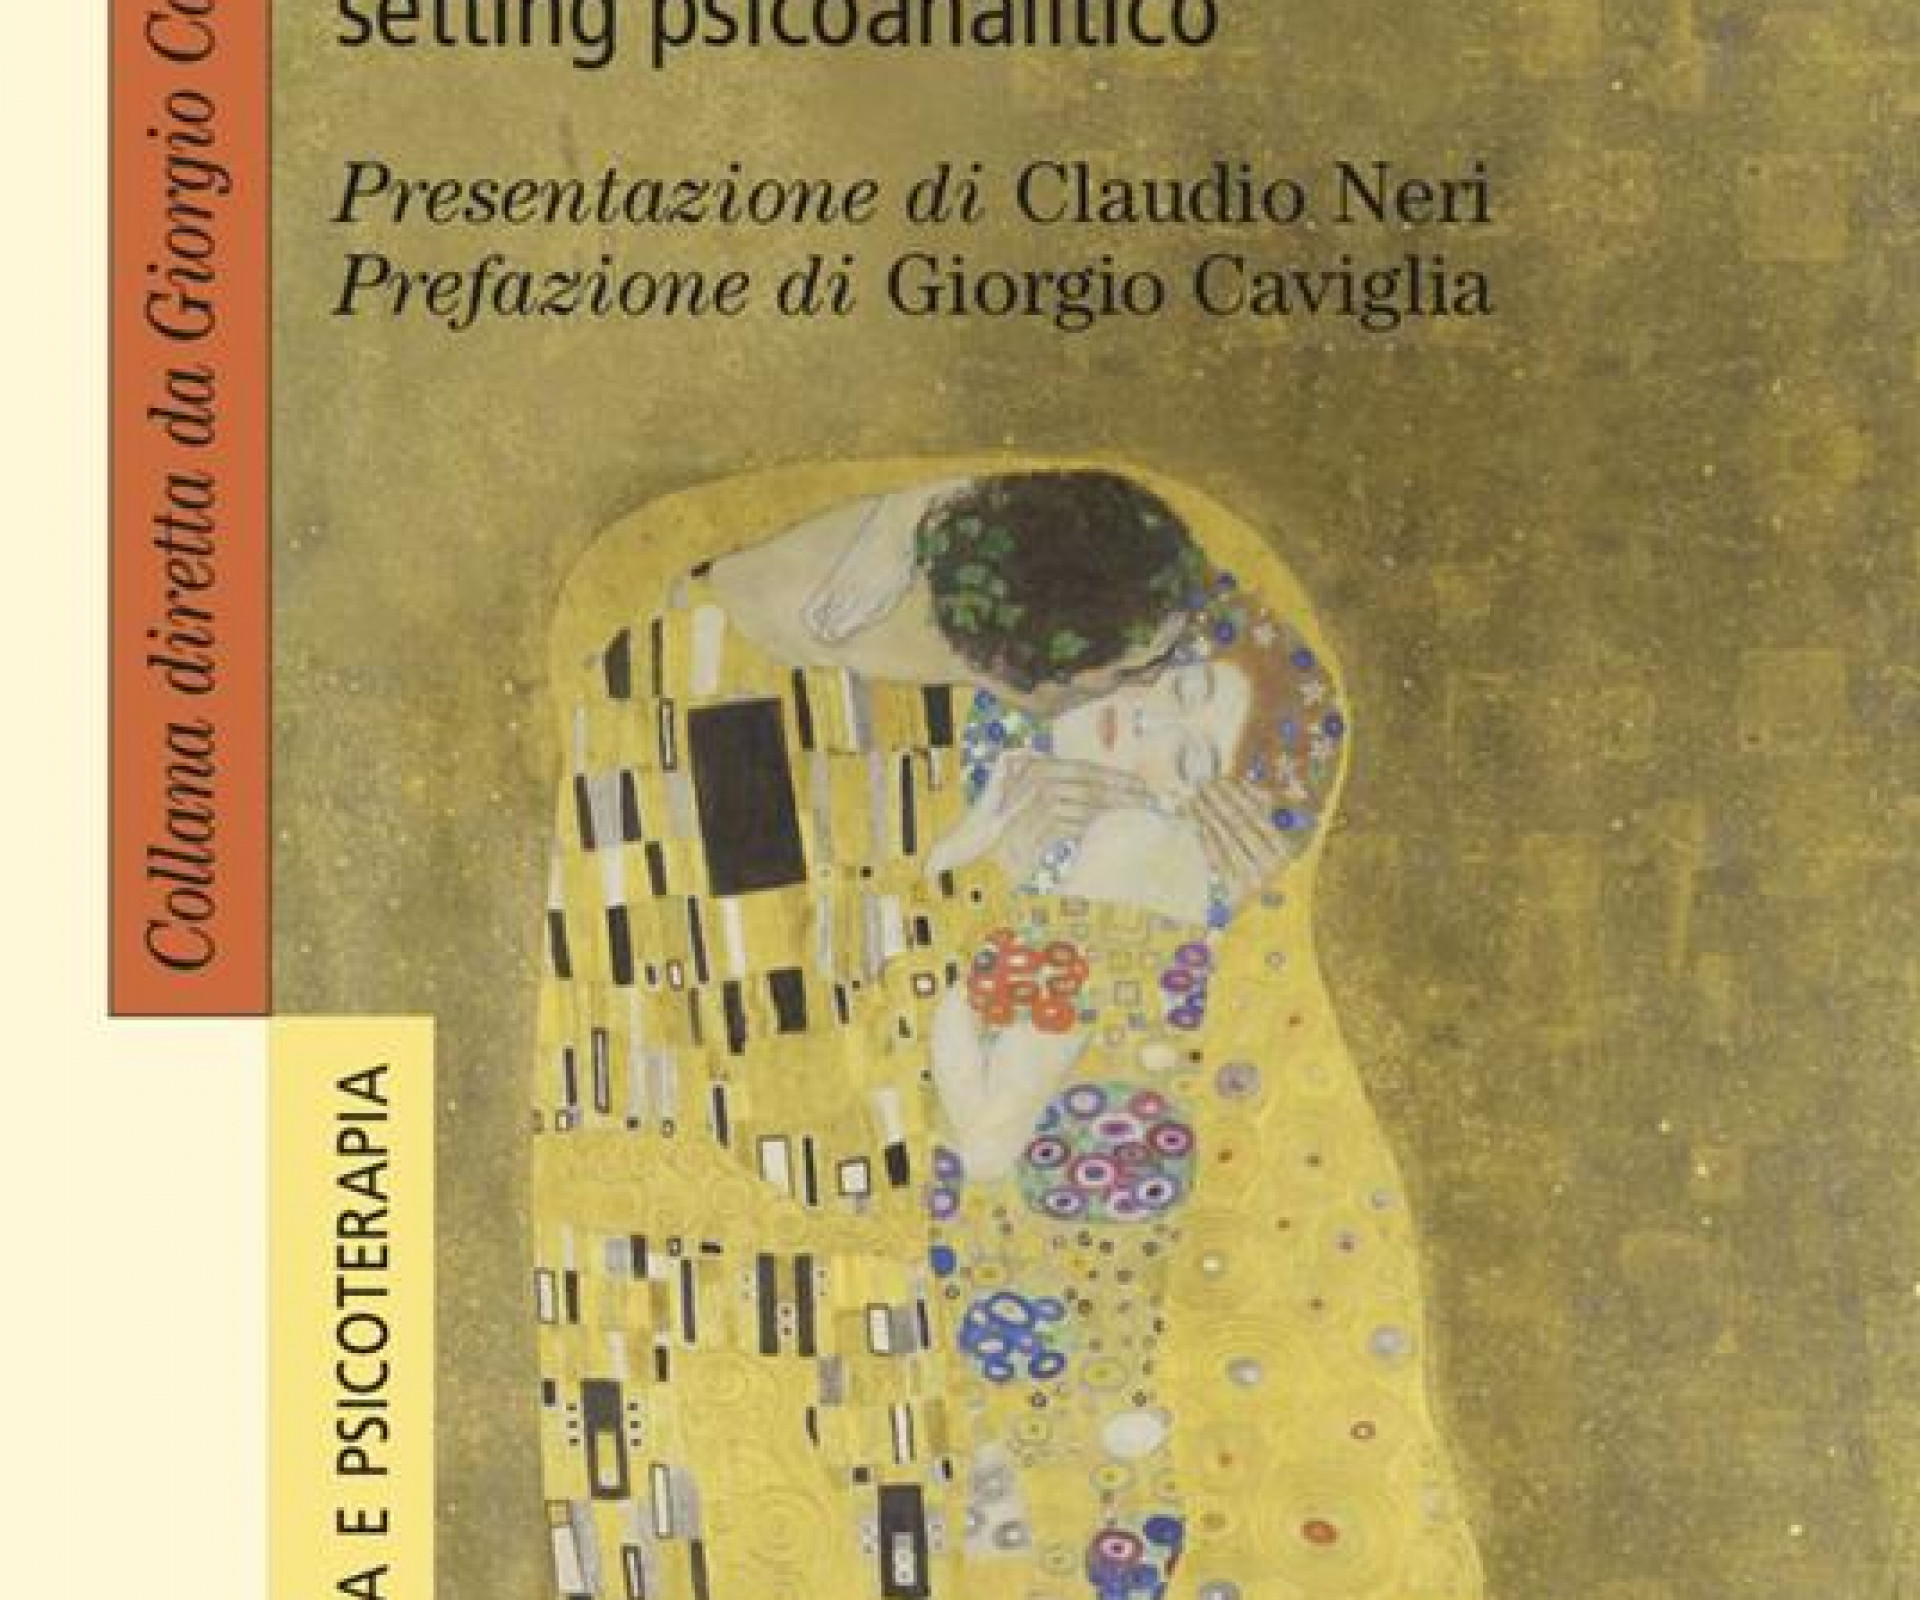 "La cura psicoanalitica dei casi complessi. Psichiatria e setting psicoanalitico" di Alberto Sonnino